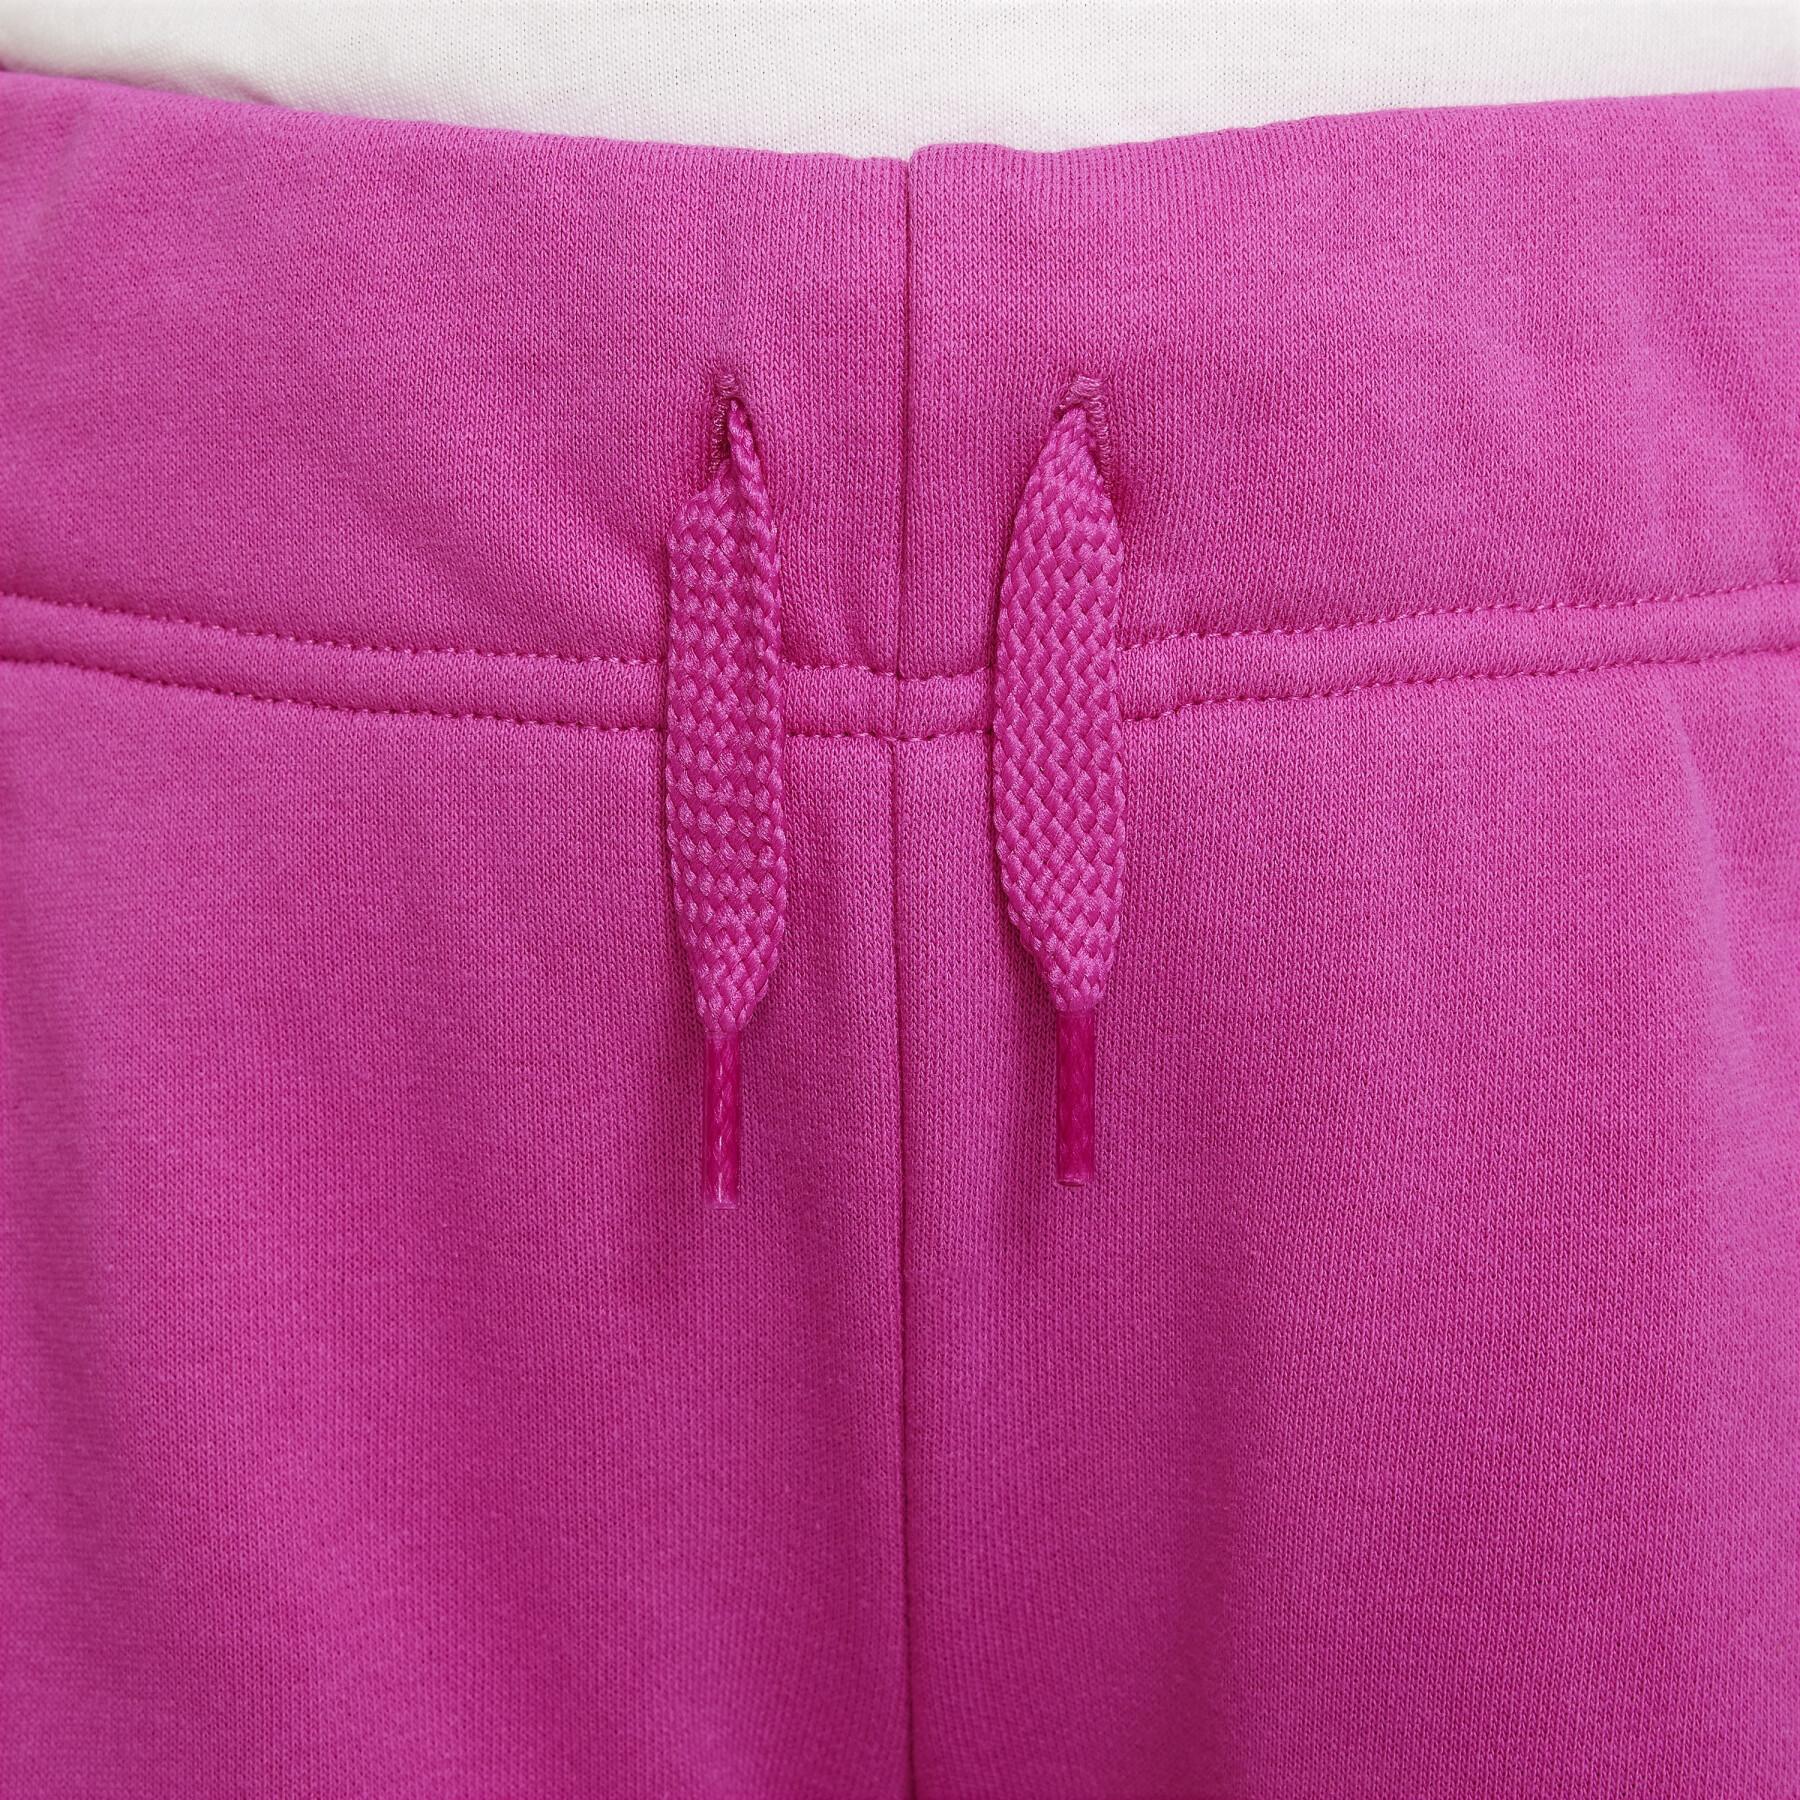 Pantalones cortos para niña Nike Club